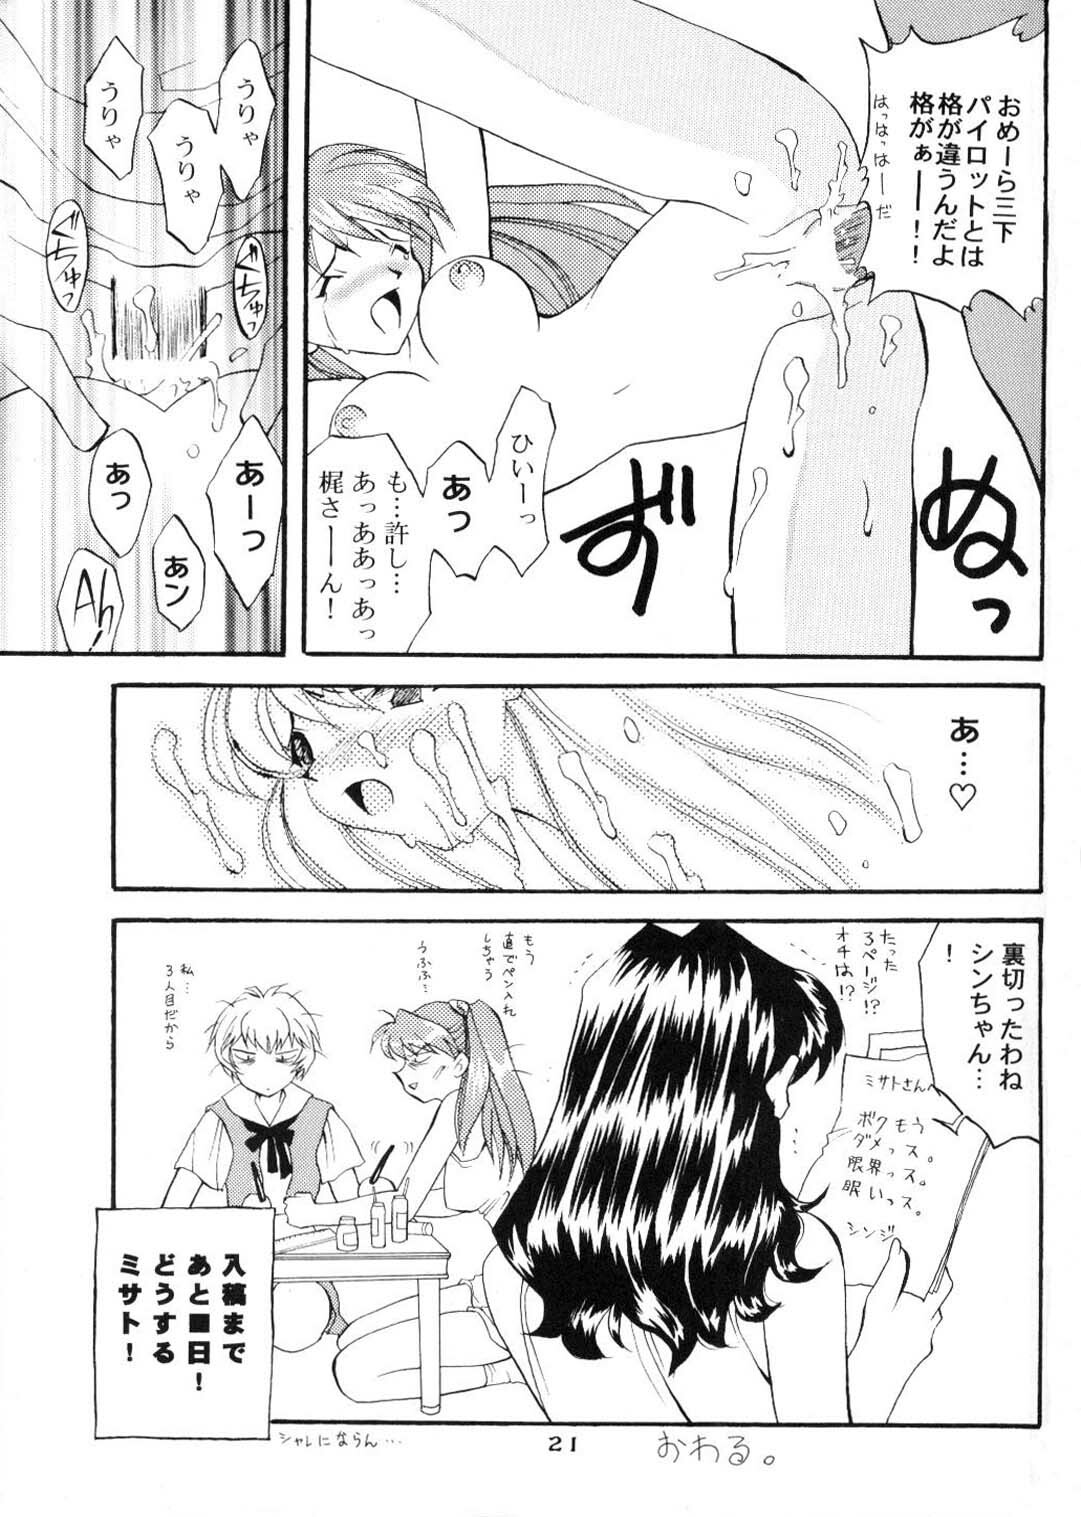 (CR20) [HK Syndicate (Hanazawa Rena, Kurikara)] Konton Chaos (Neon Genesis Evangelion) page 20 full